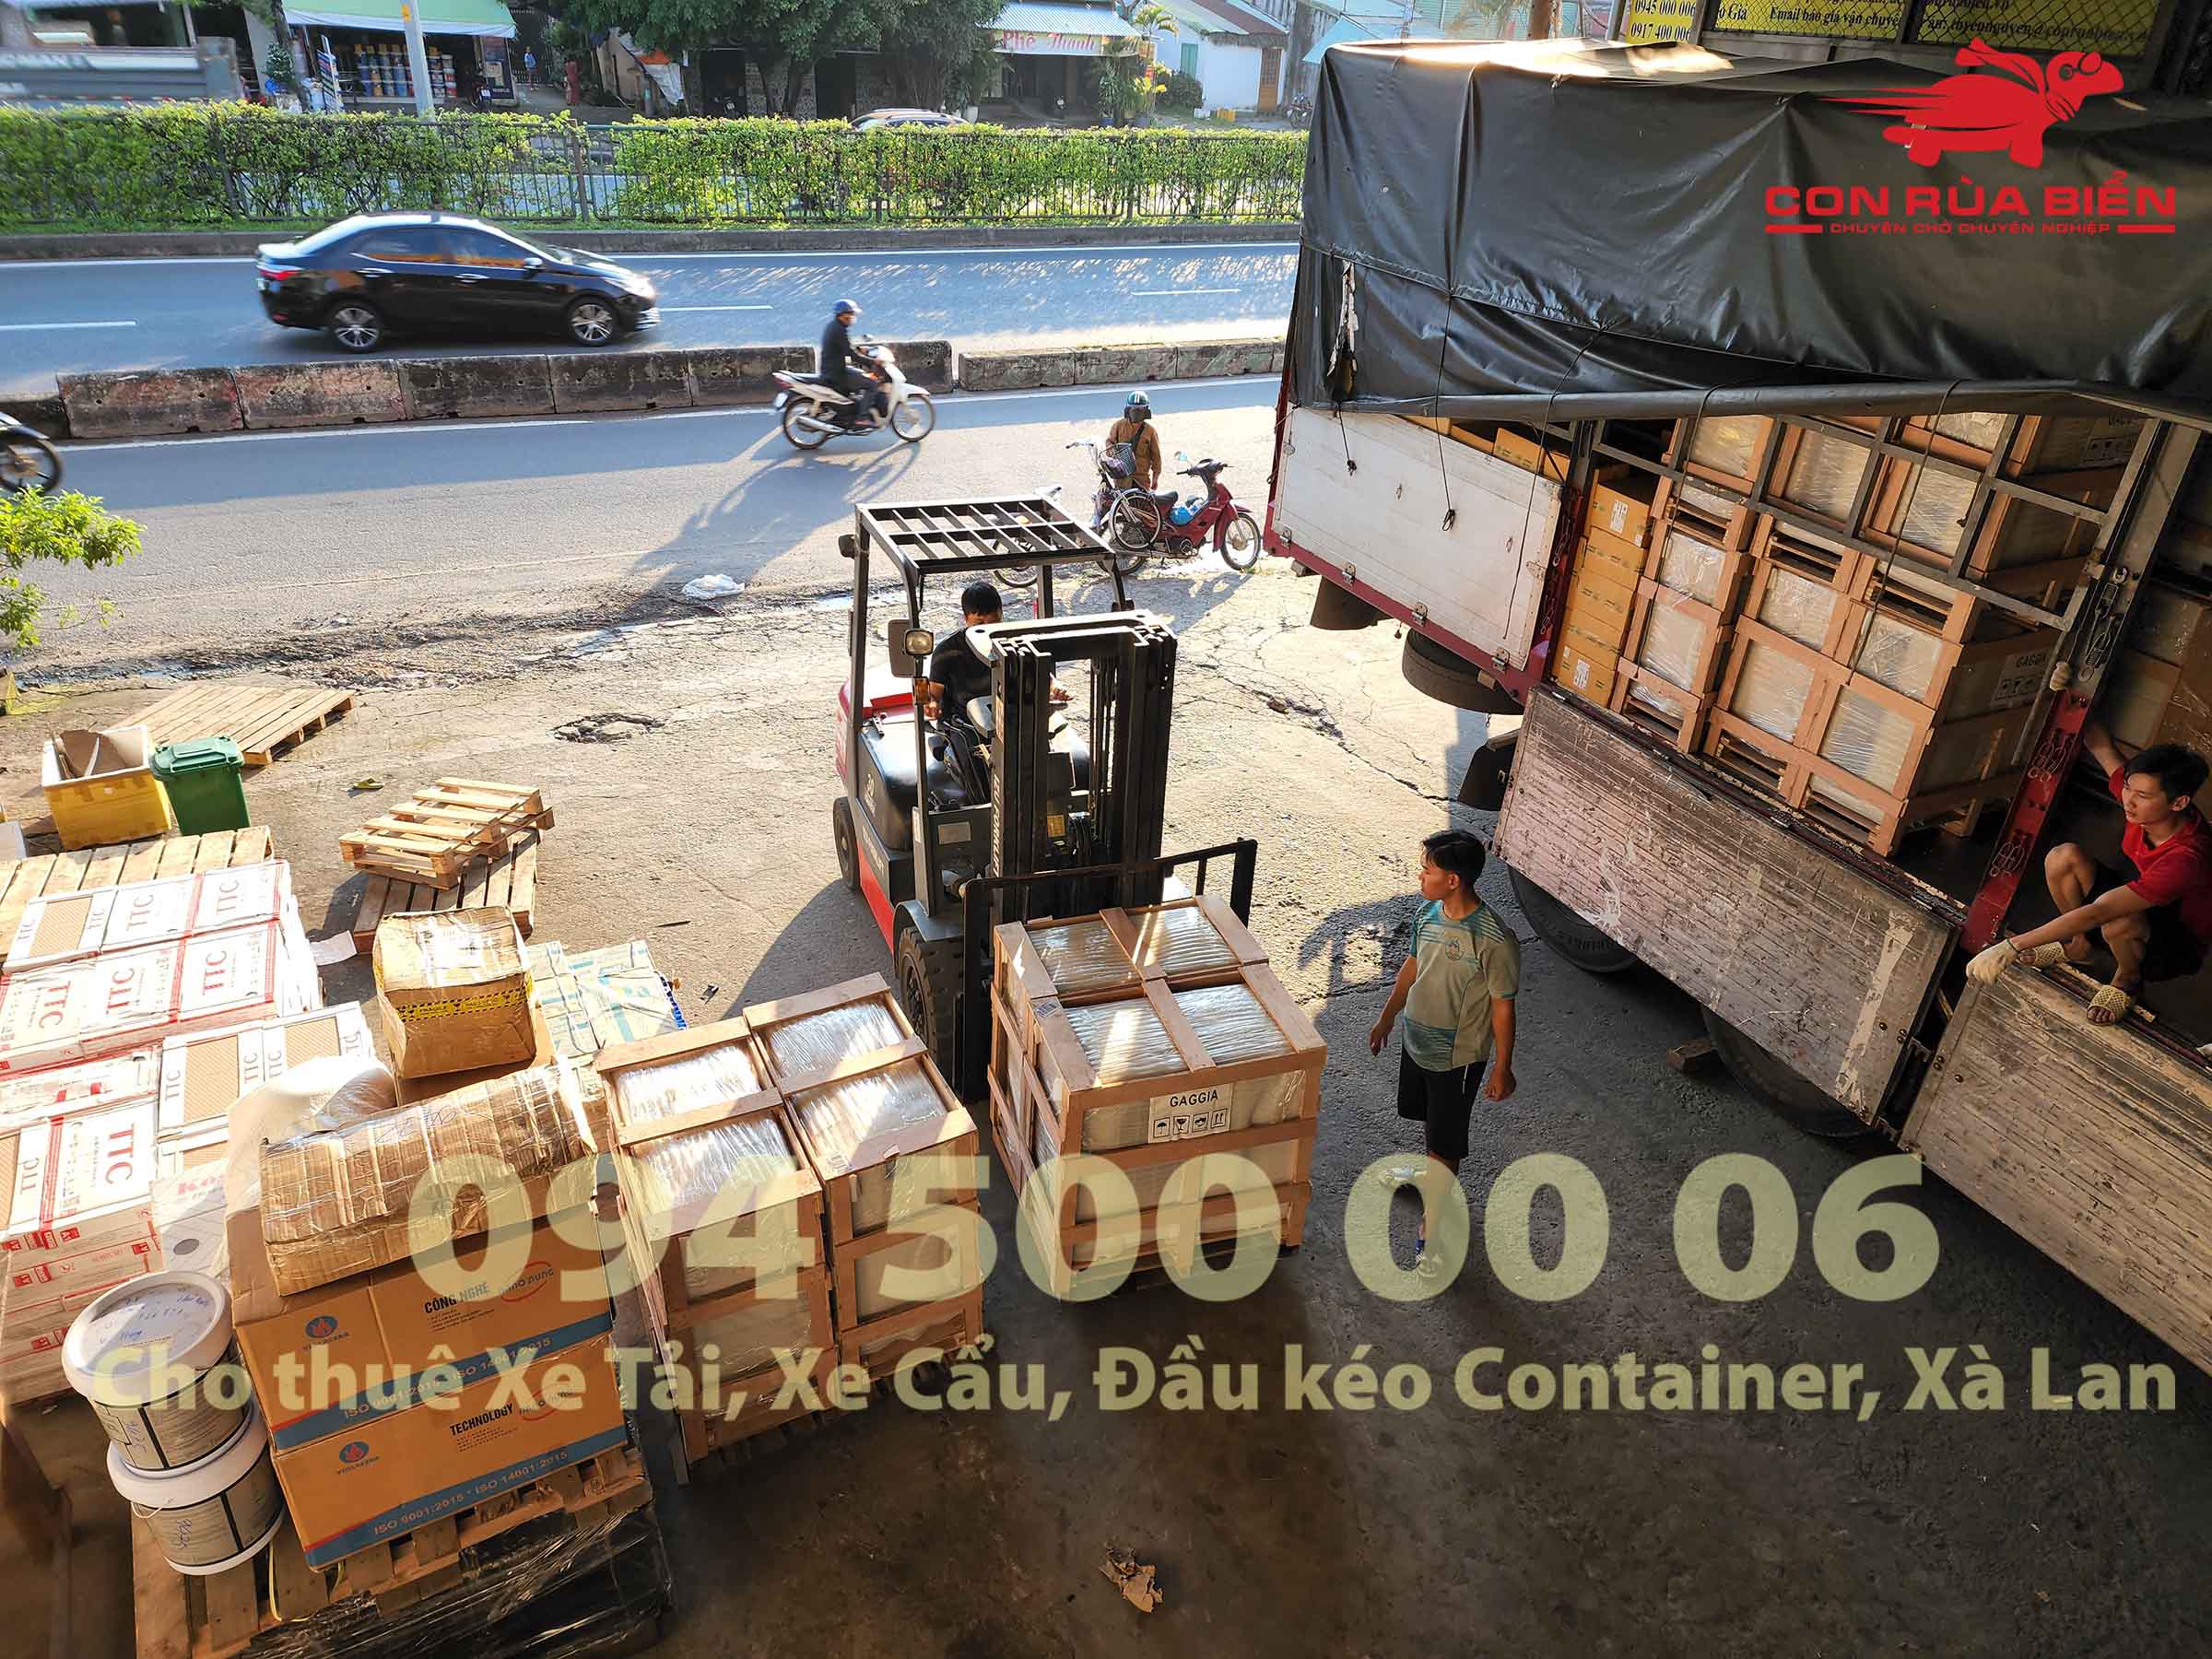 Chành xe Phú Quốc - Con Rùa Biển là nhà xe vận chuyển chuyên tuyến Hà Nội - Sài Gòn - Phú Quốc với dịch vụ Vận chuyển hàng đi Phú Quốc từ Hải Dương | 0945000006